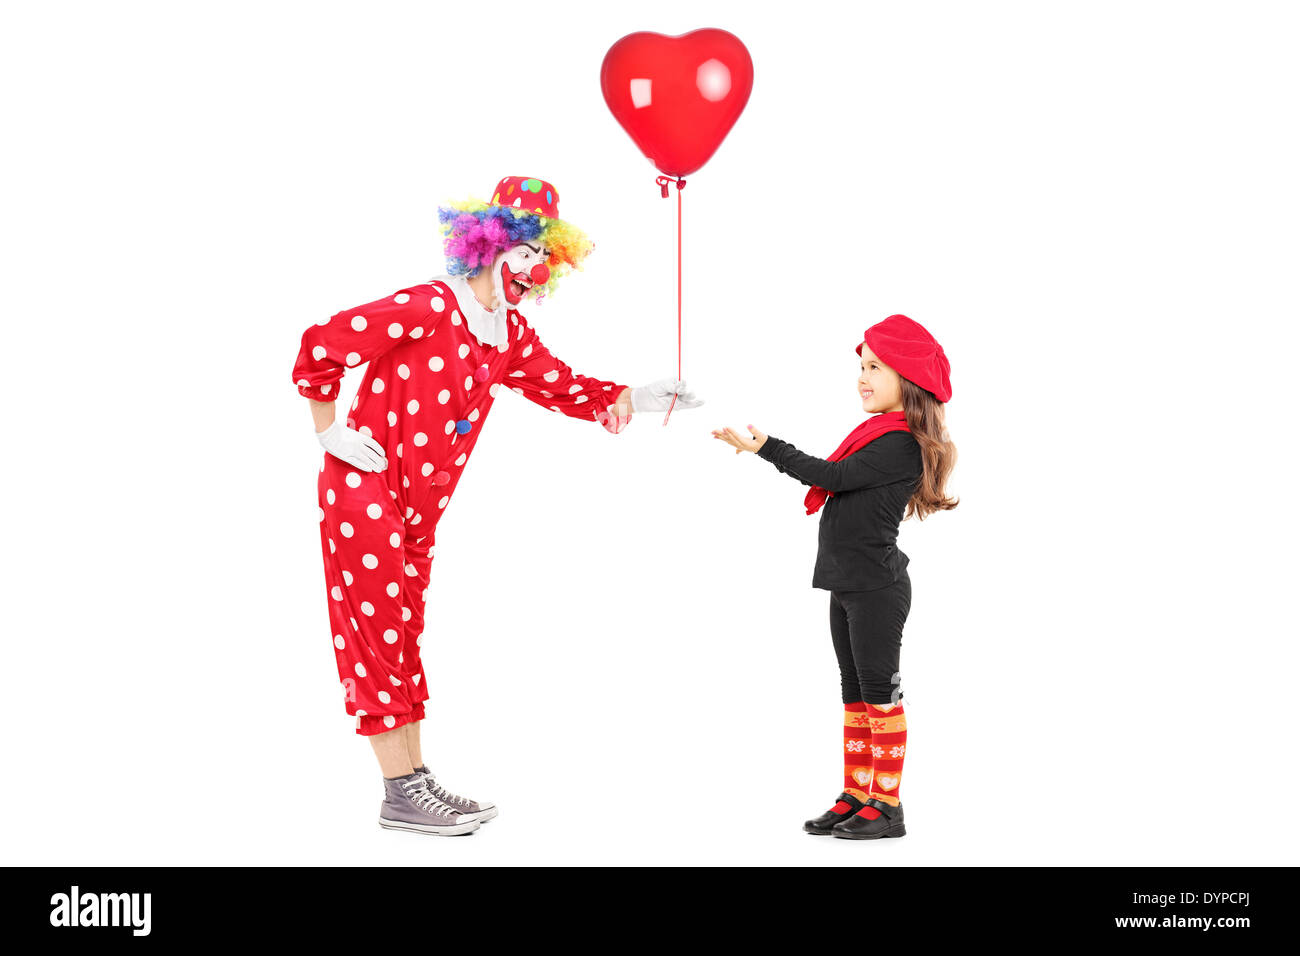 Männlichen Clown geben einen roten Ballon, einem kleines Mädchen Stockfoto